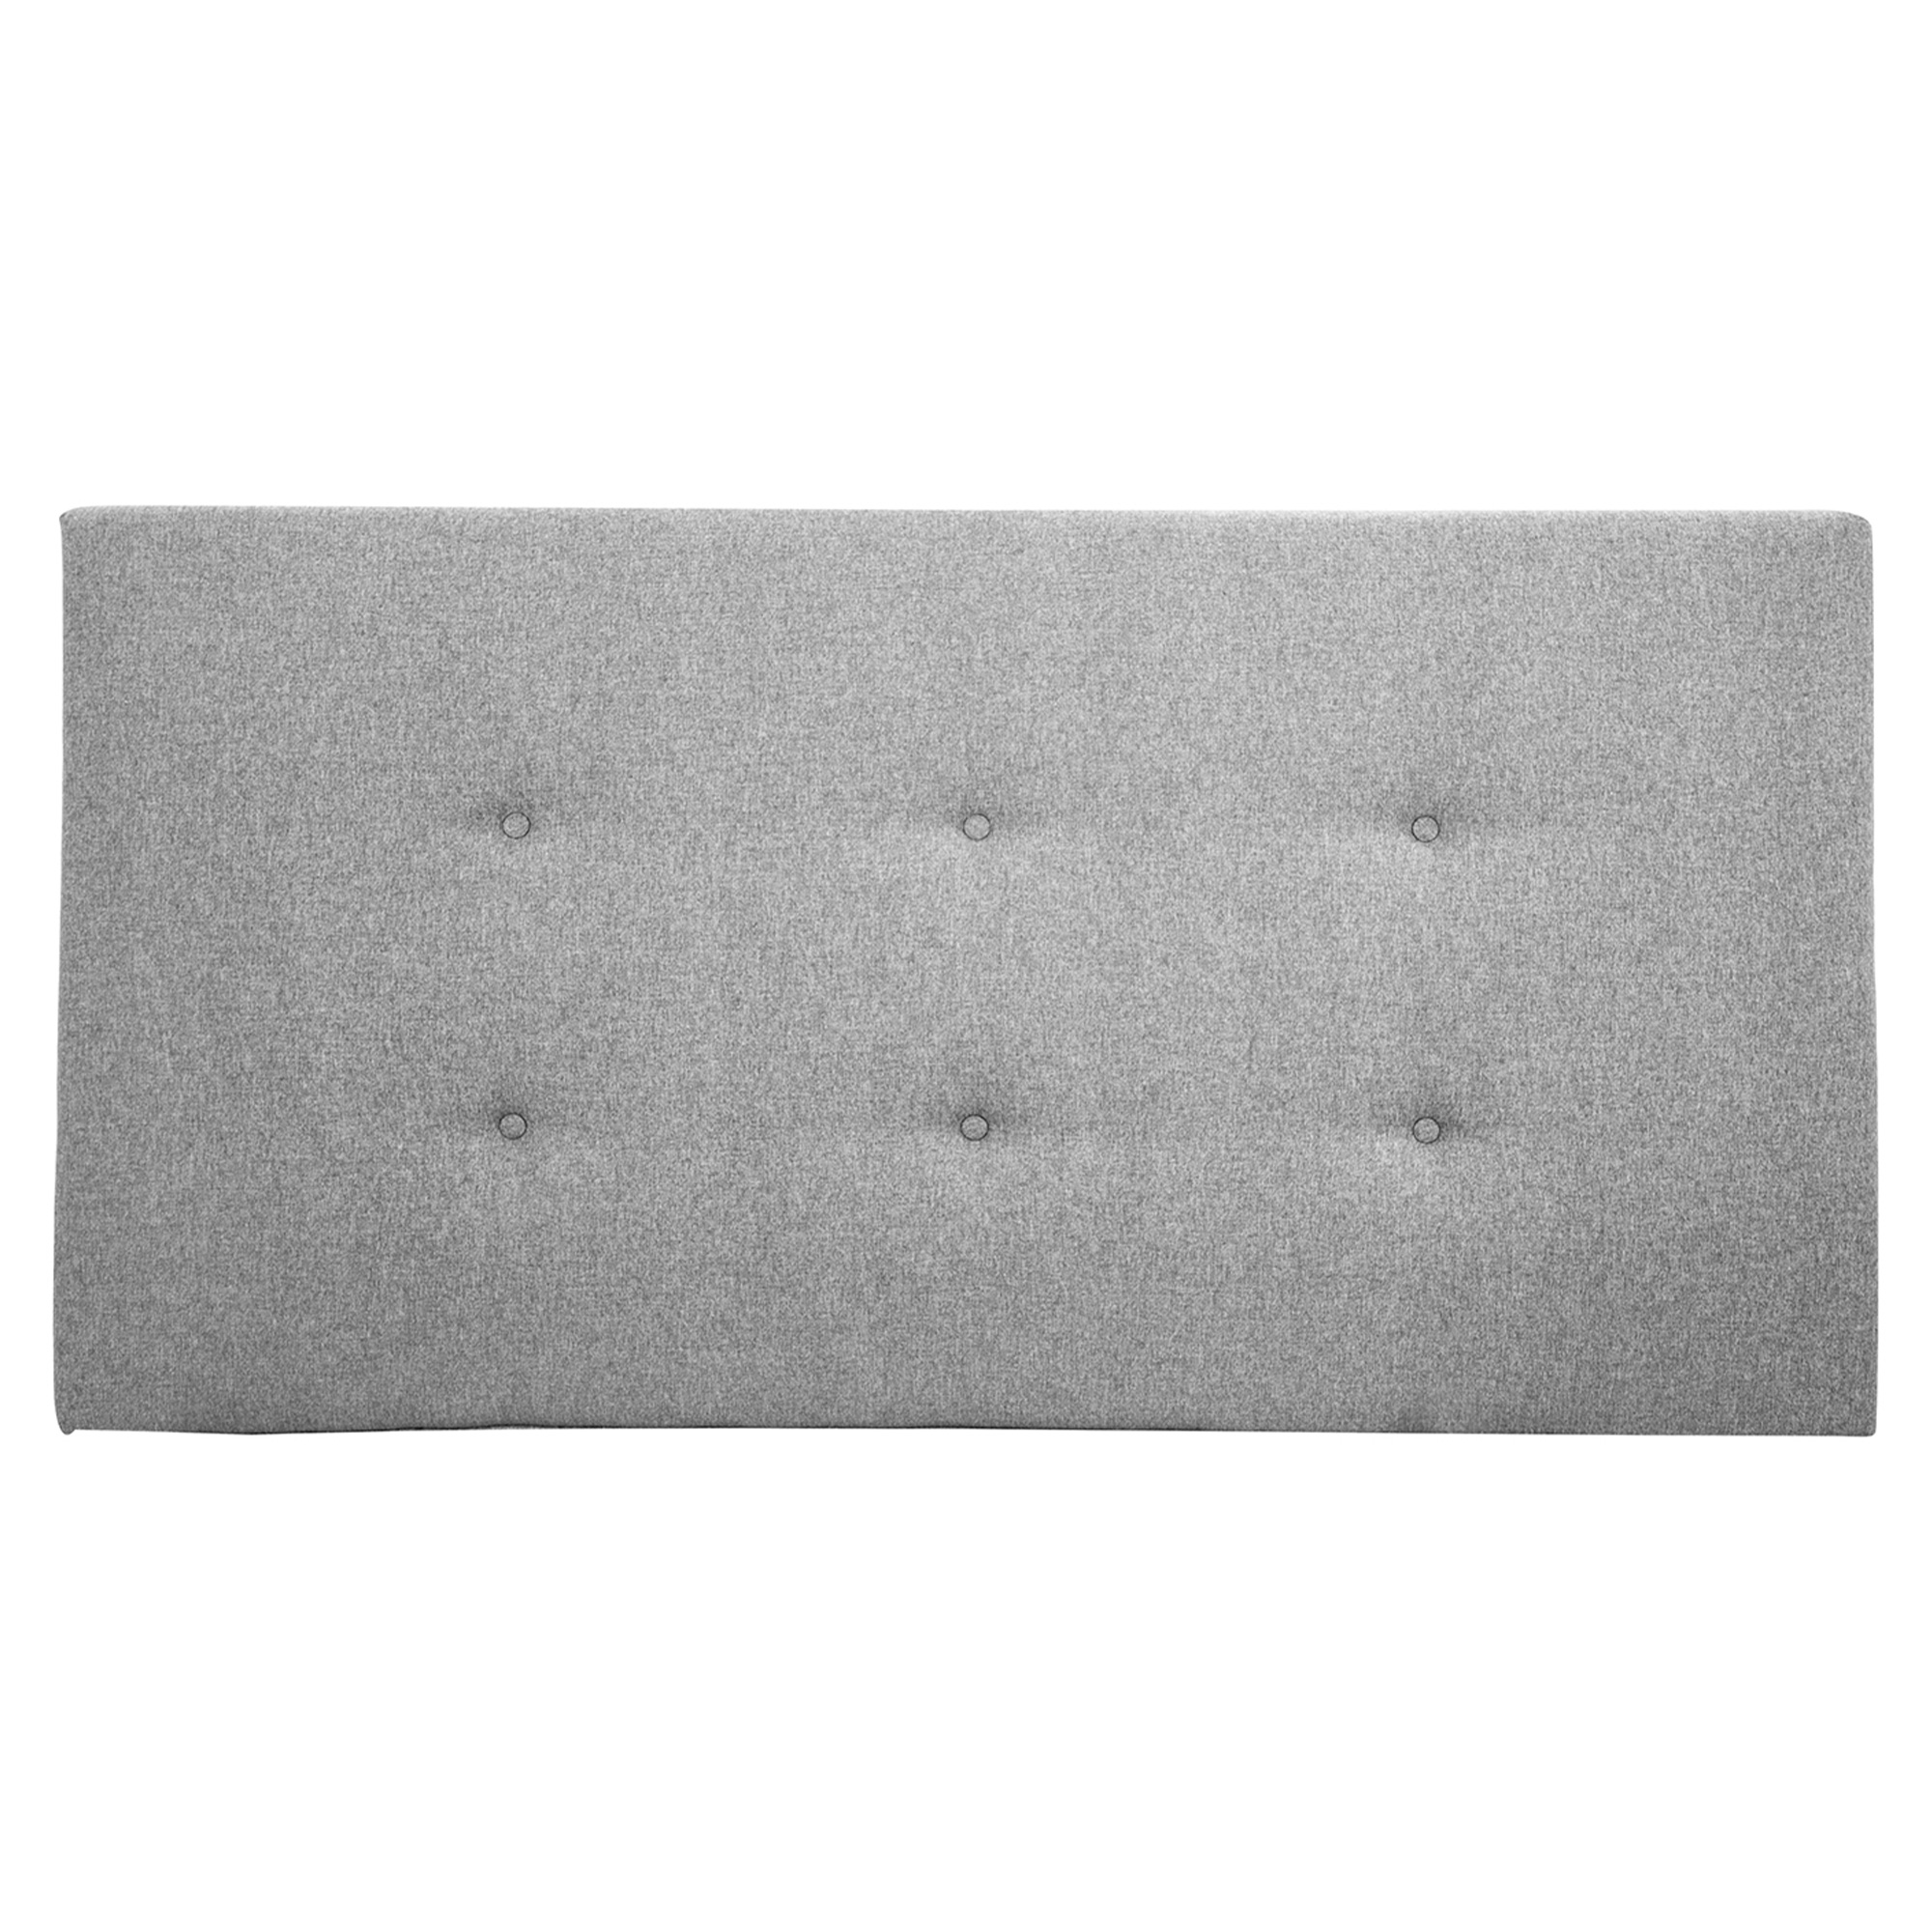 Tête de lit polyester couleur grise 180x80cm